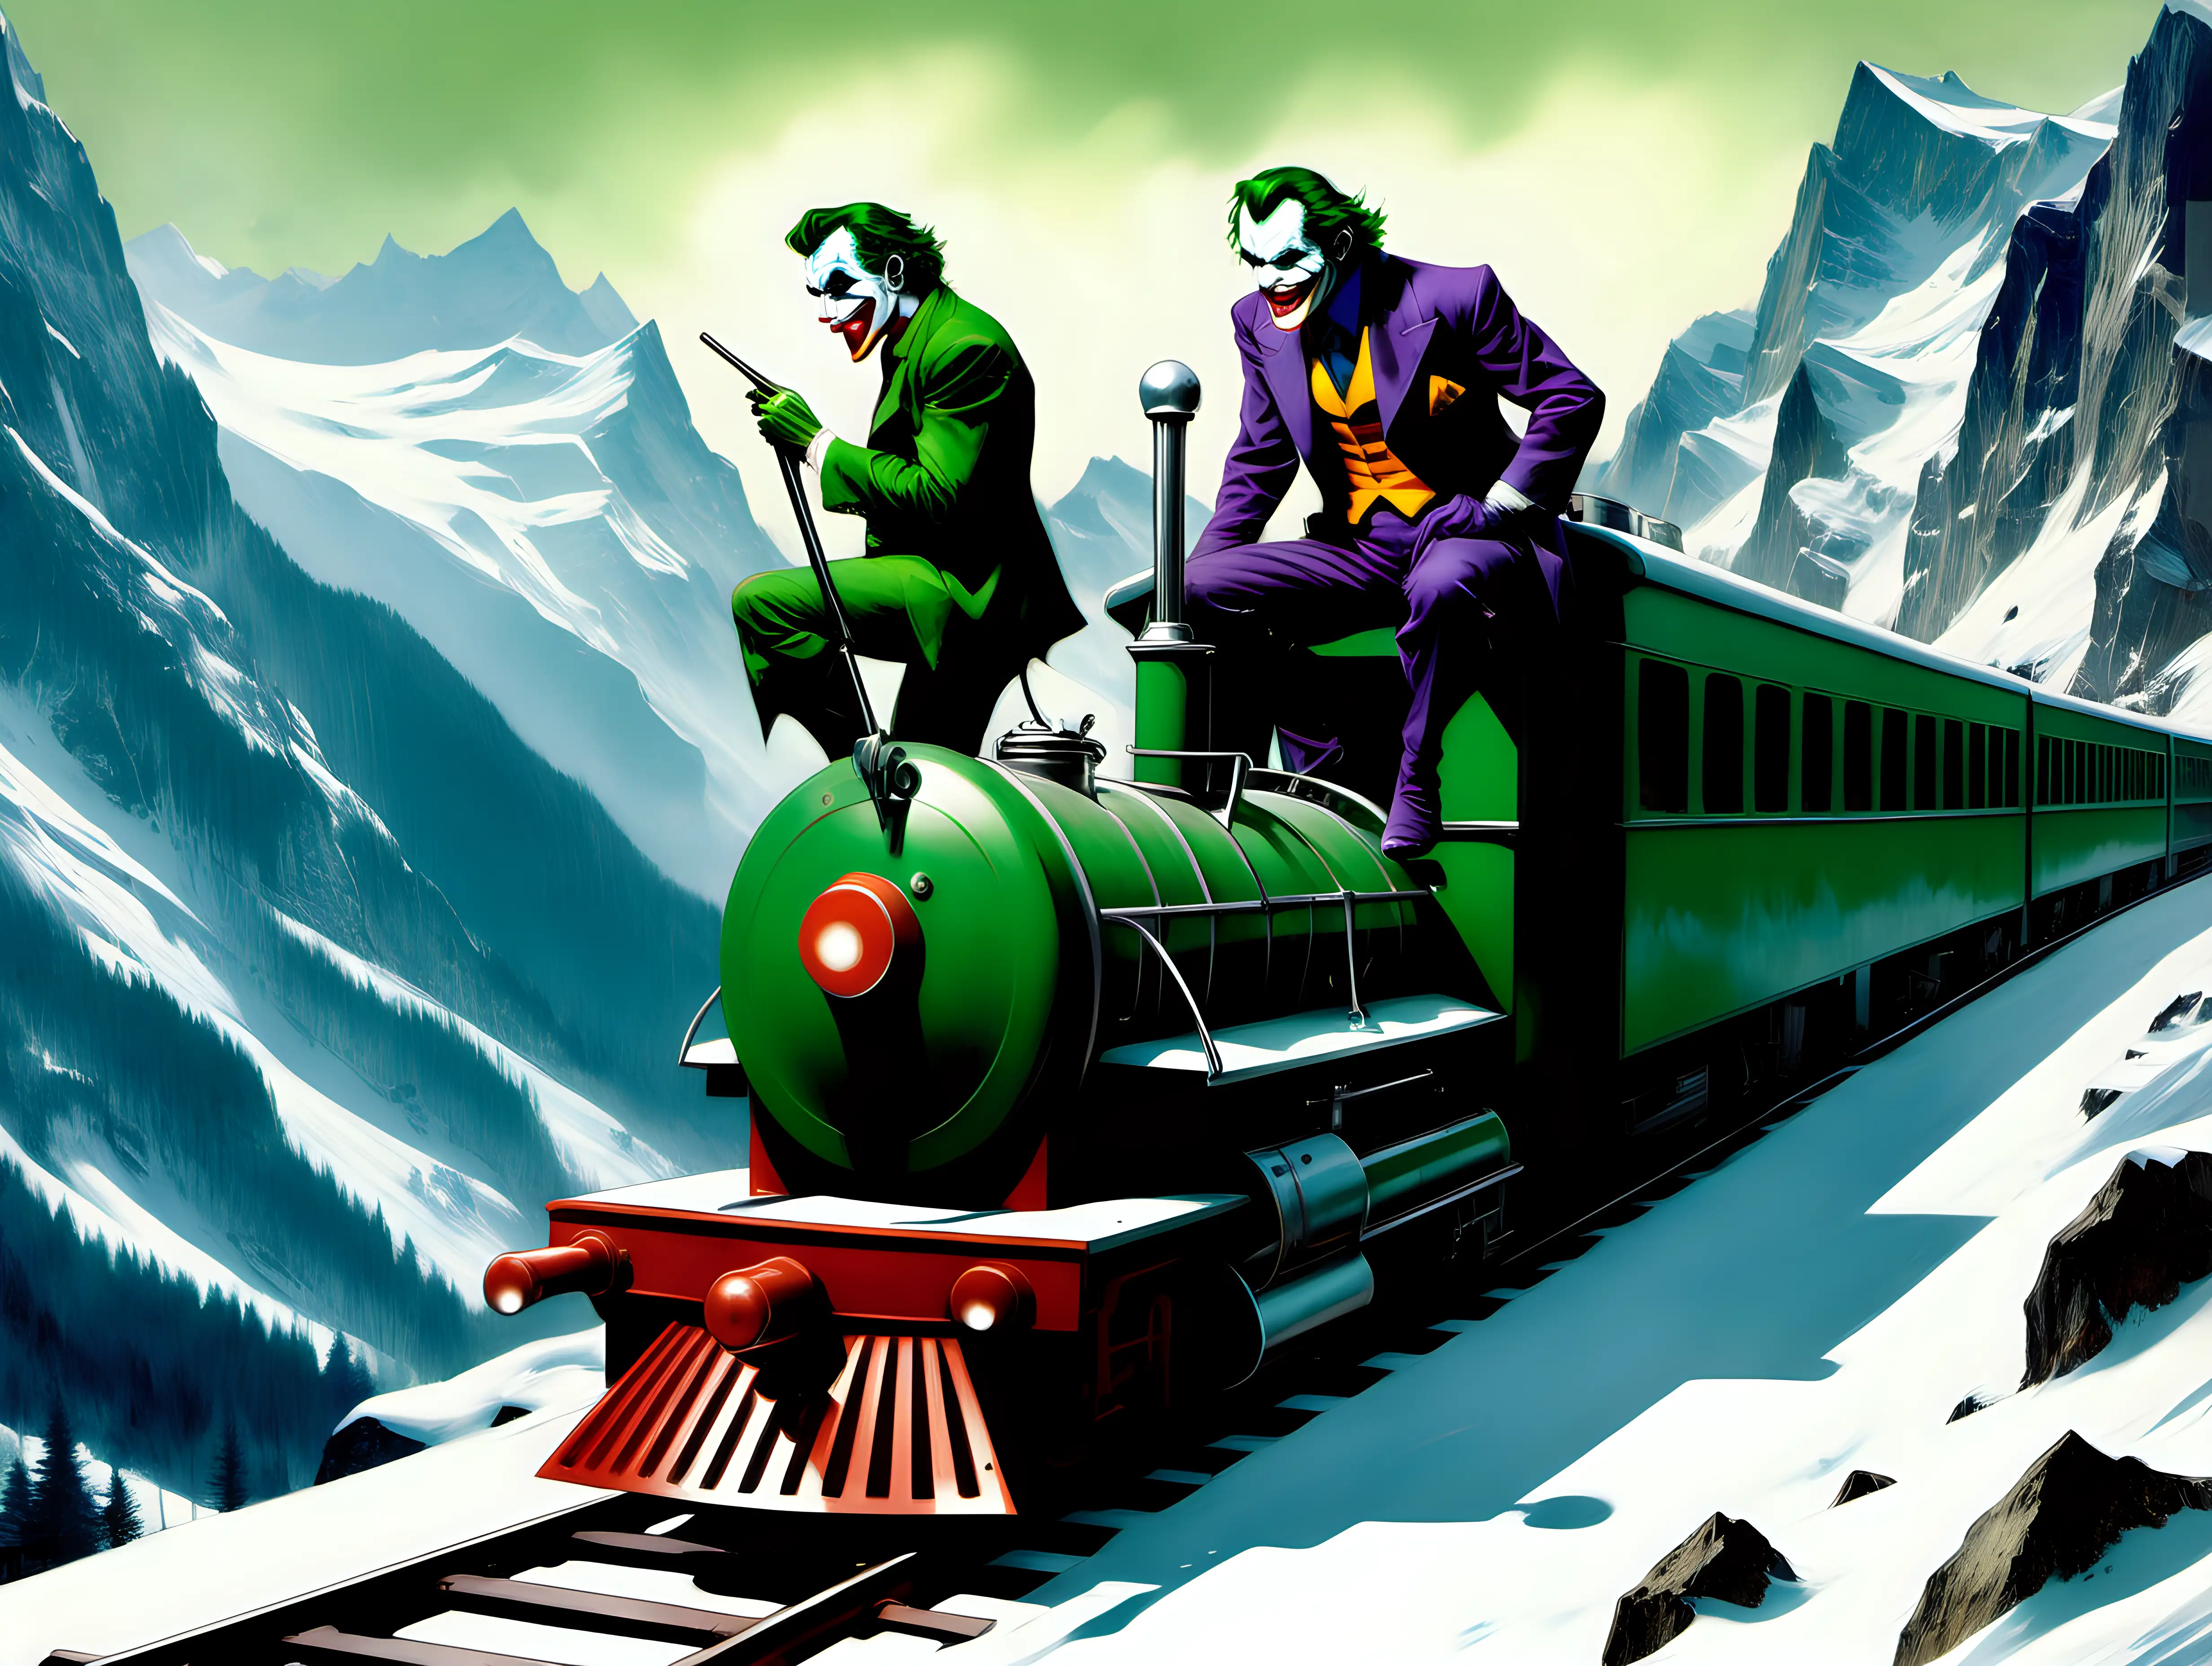 The Joker on a train in the Swiss Alps Frank Frazetta style